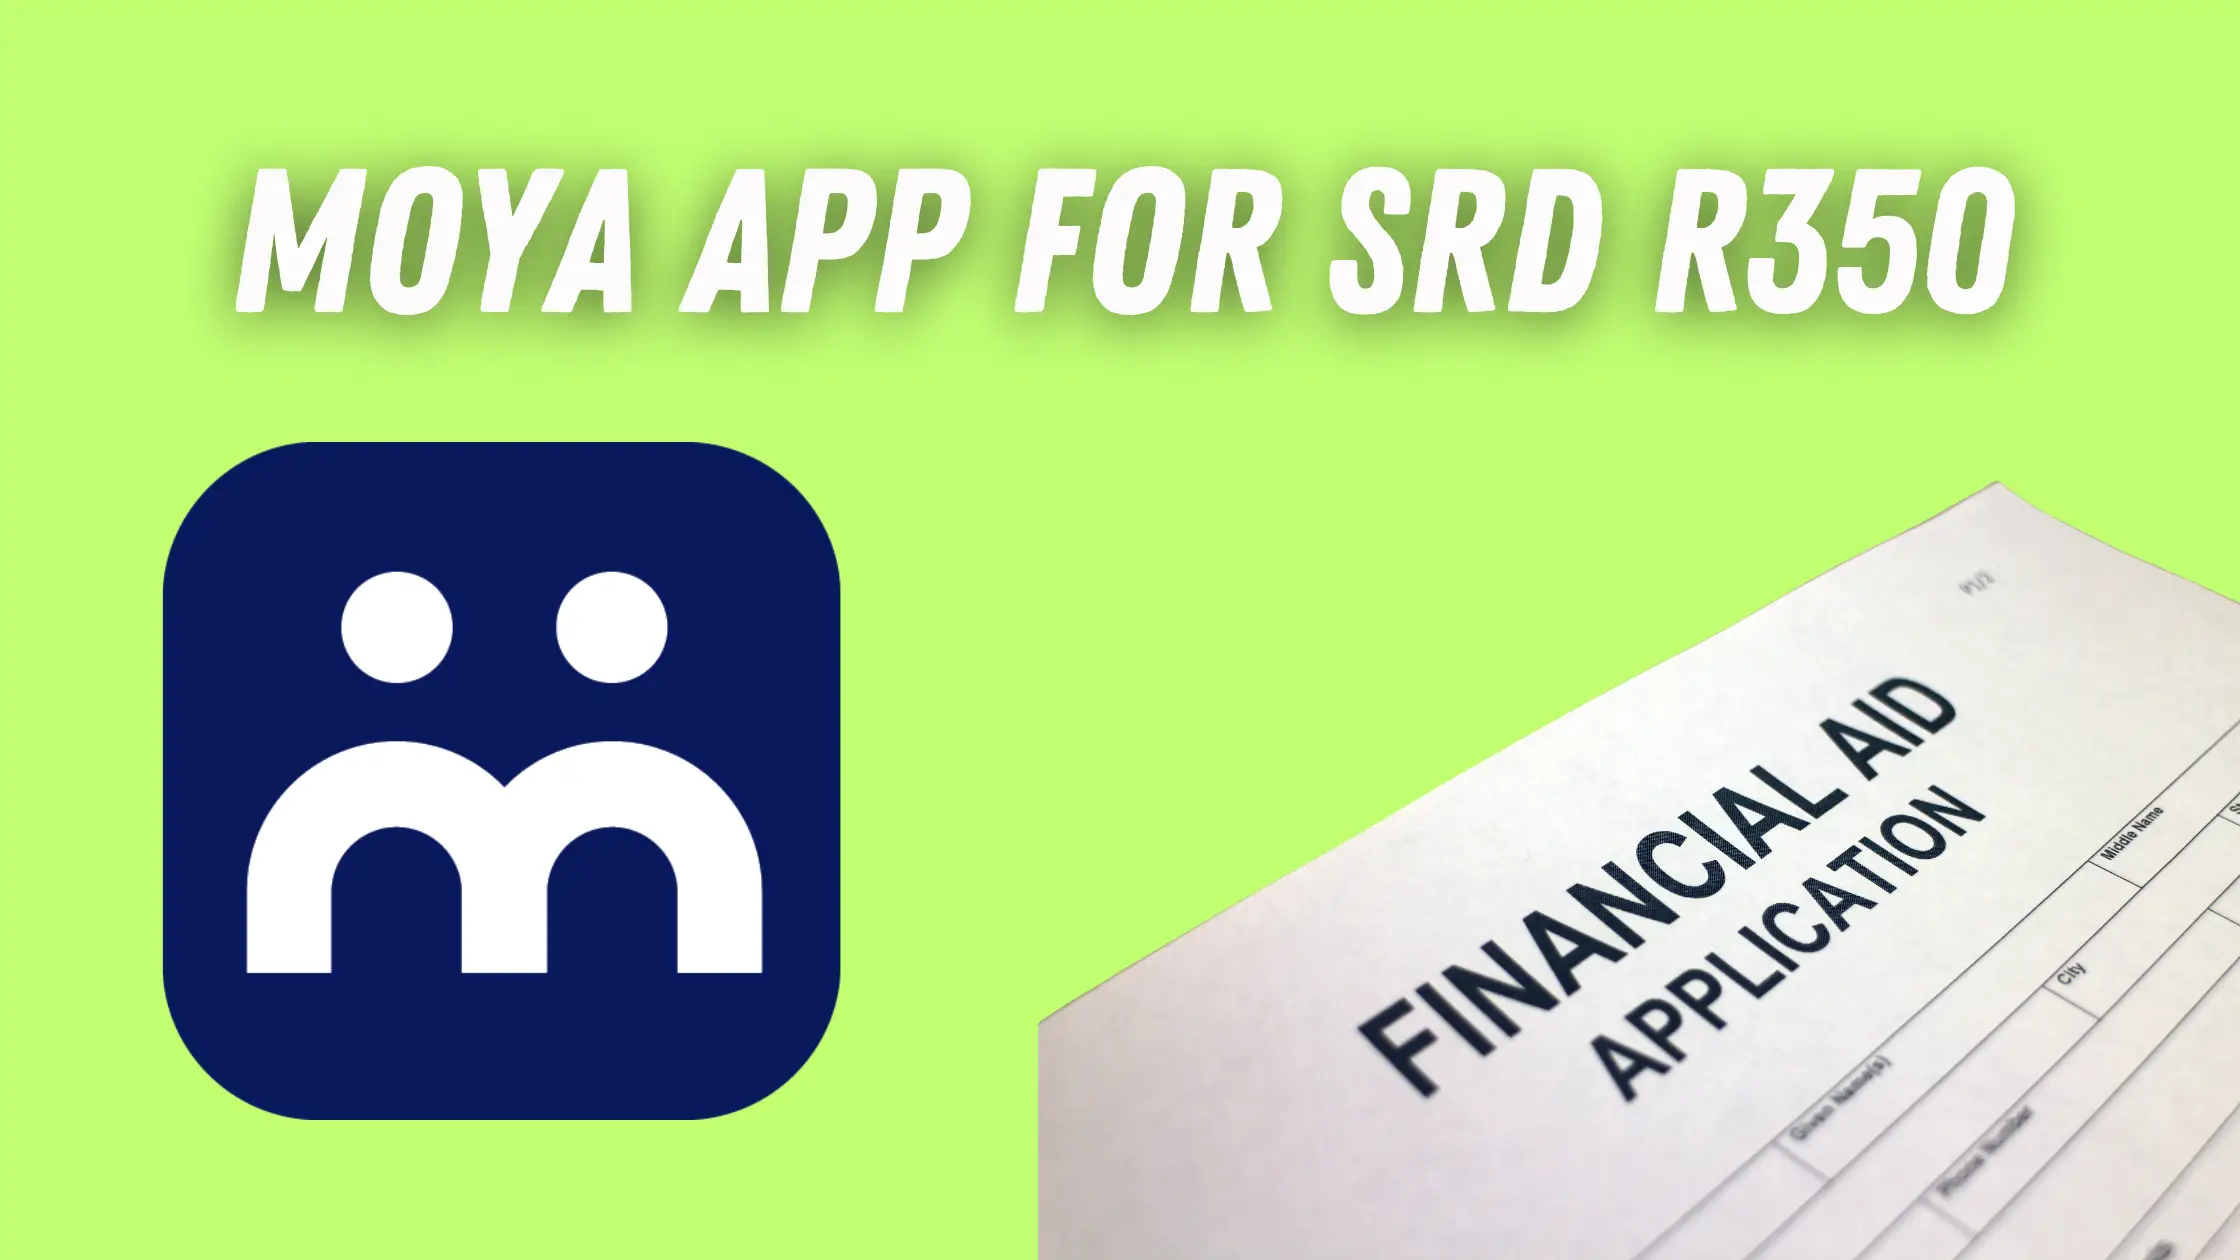 moya app for srd r350